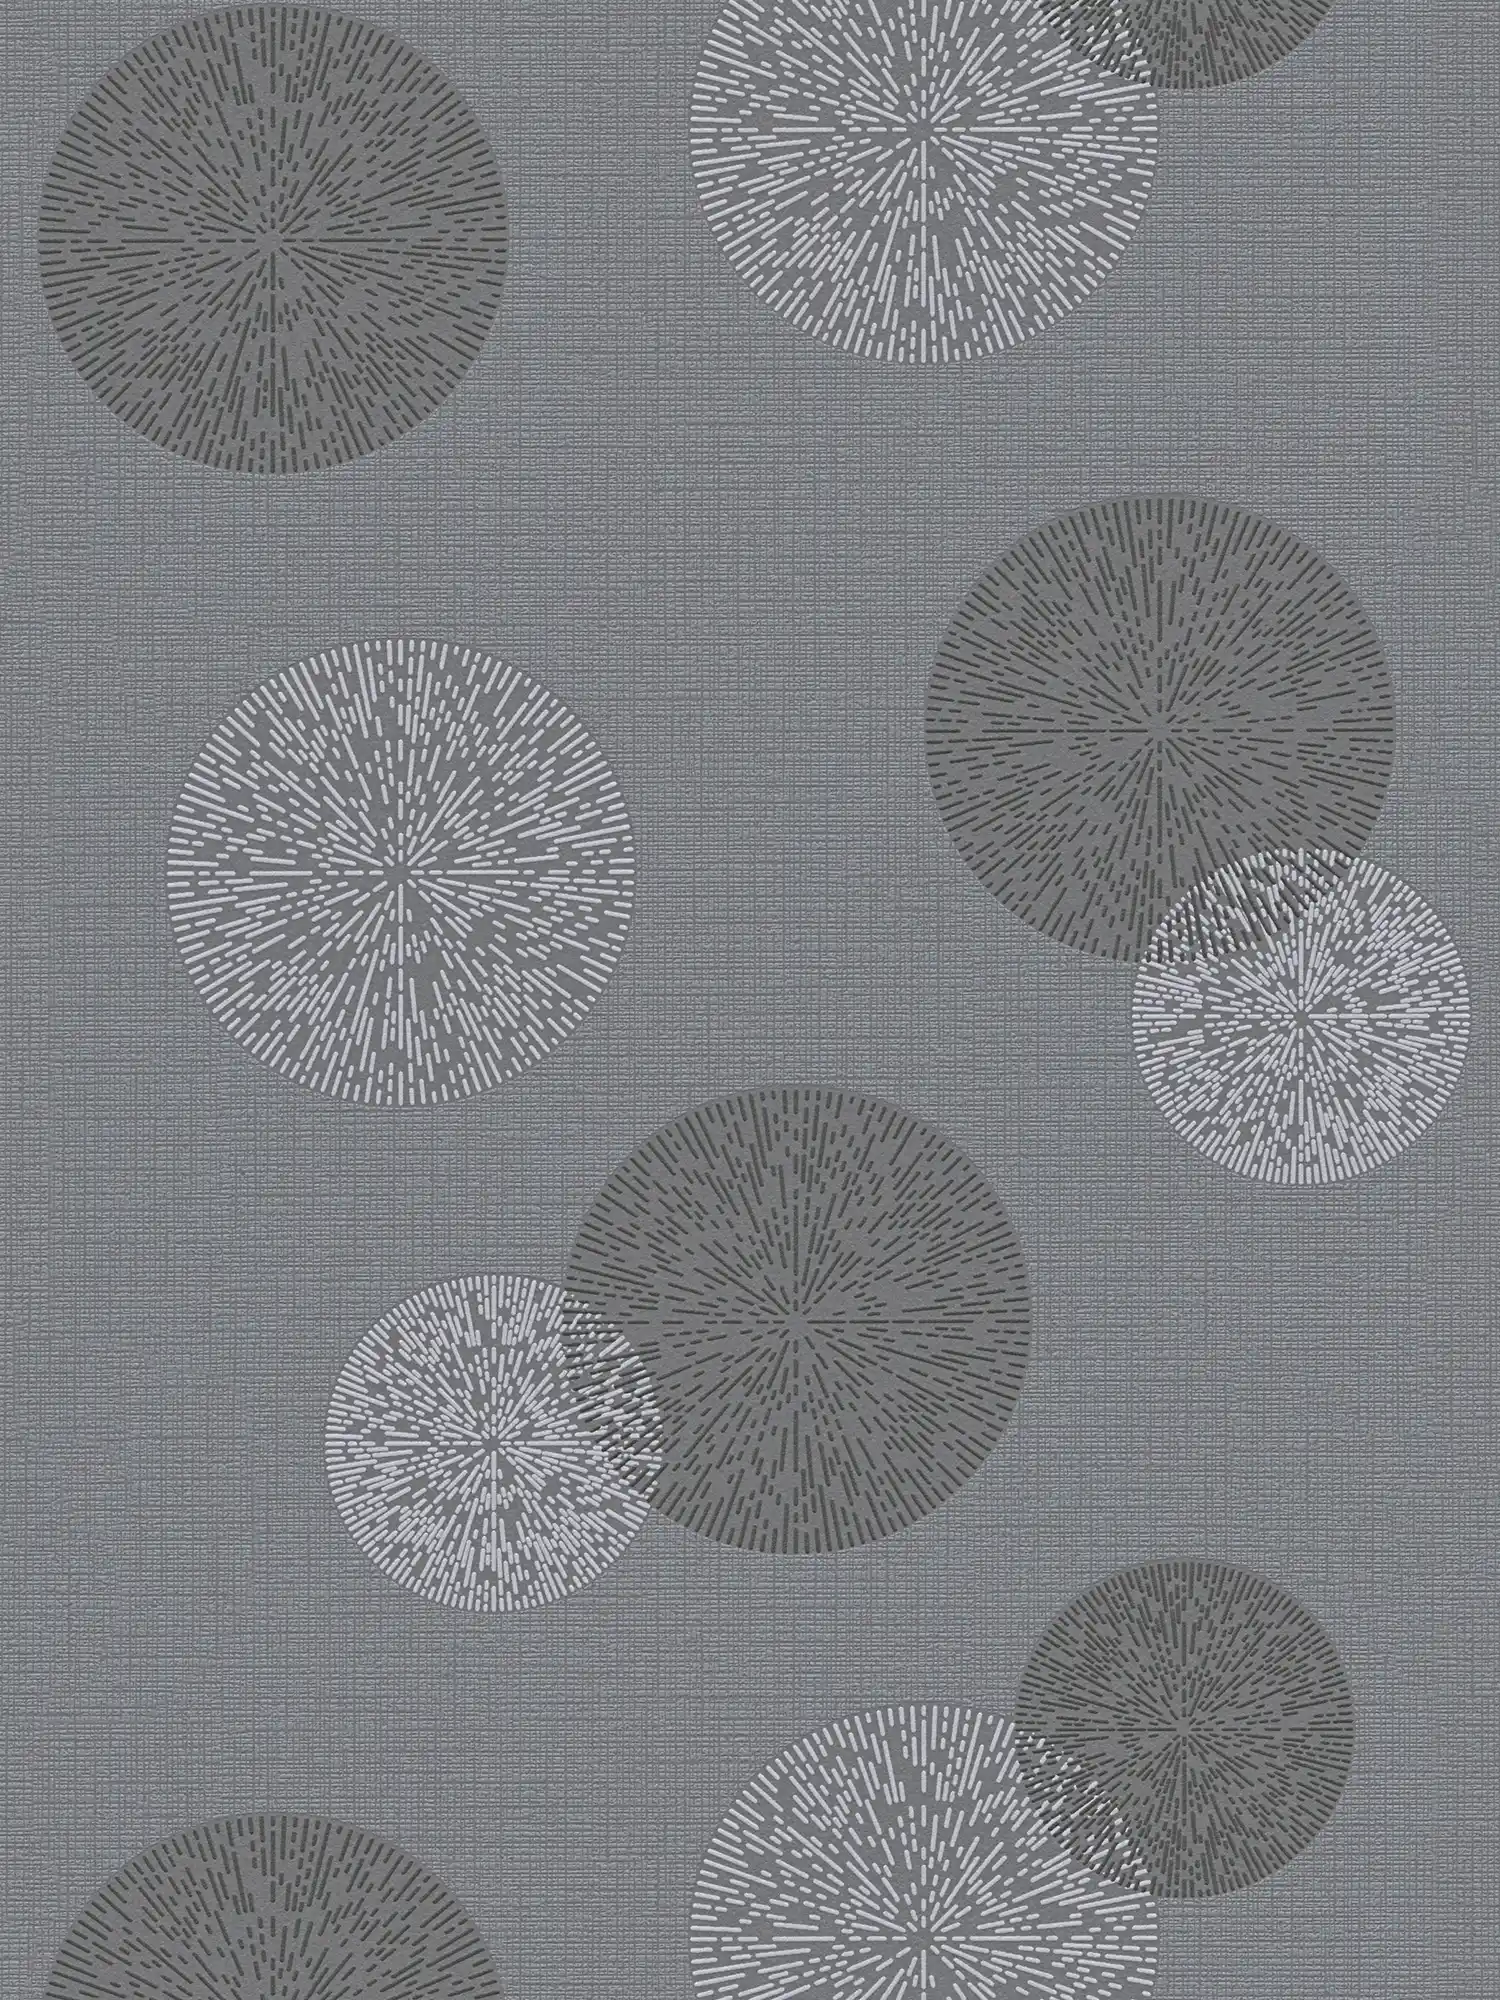 Woonkamerbehang met modern cirkelpatroon - grijs
